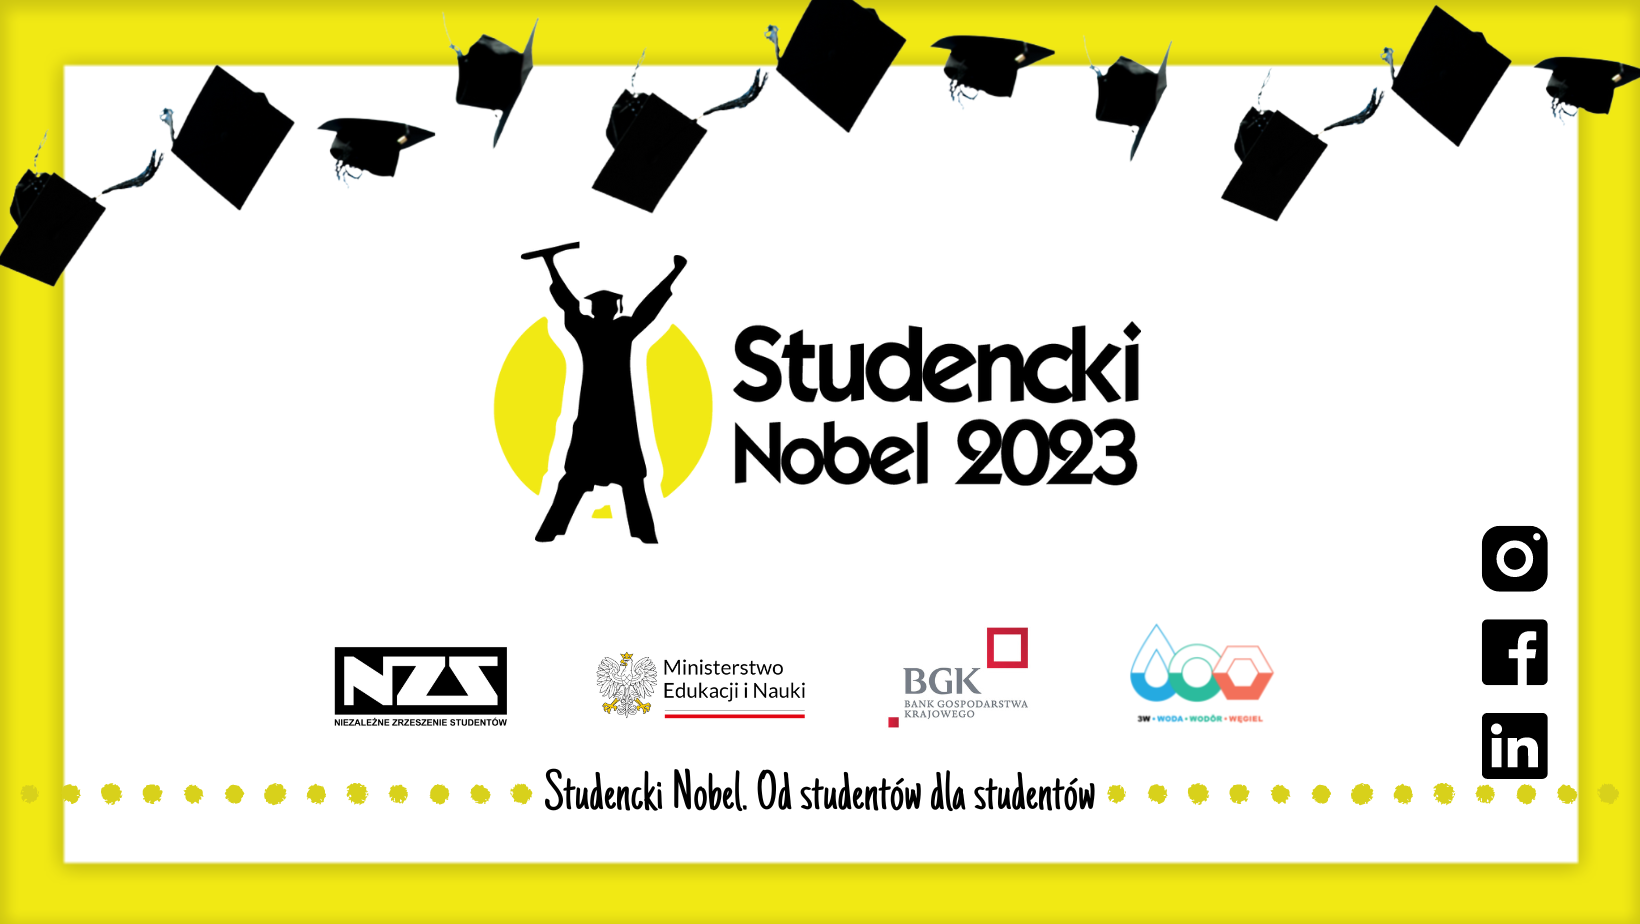 STUDENCKI NOBEL -  rozpoczęły się  zapisy do XIV edycji konkursu Studencki Nobel!